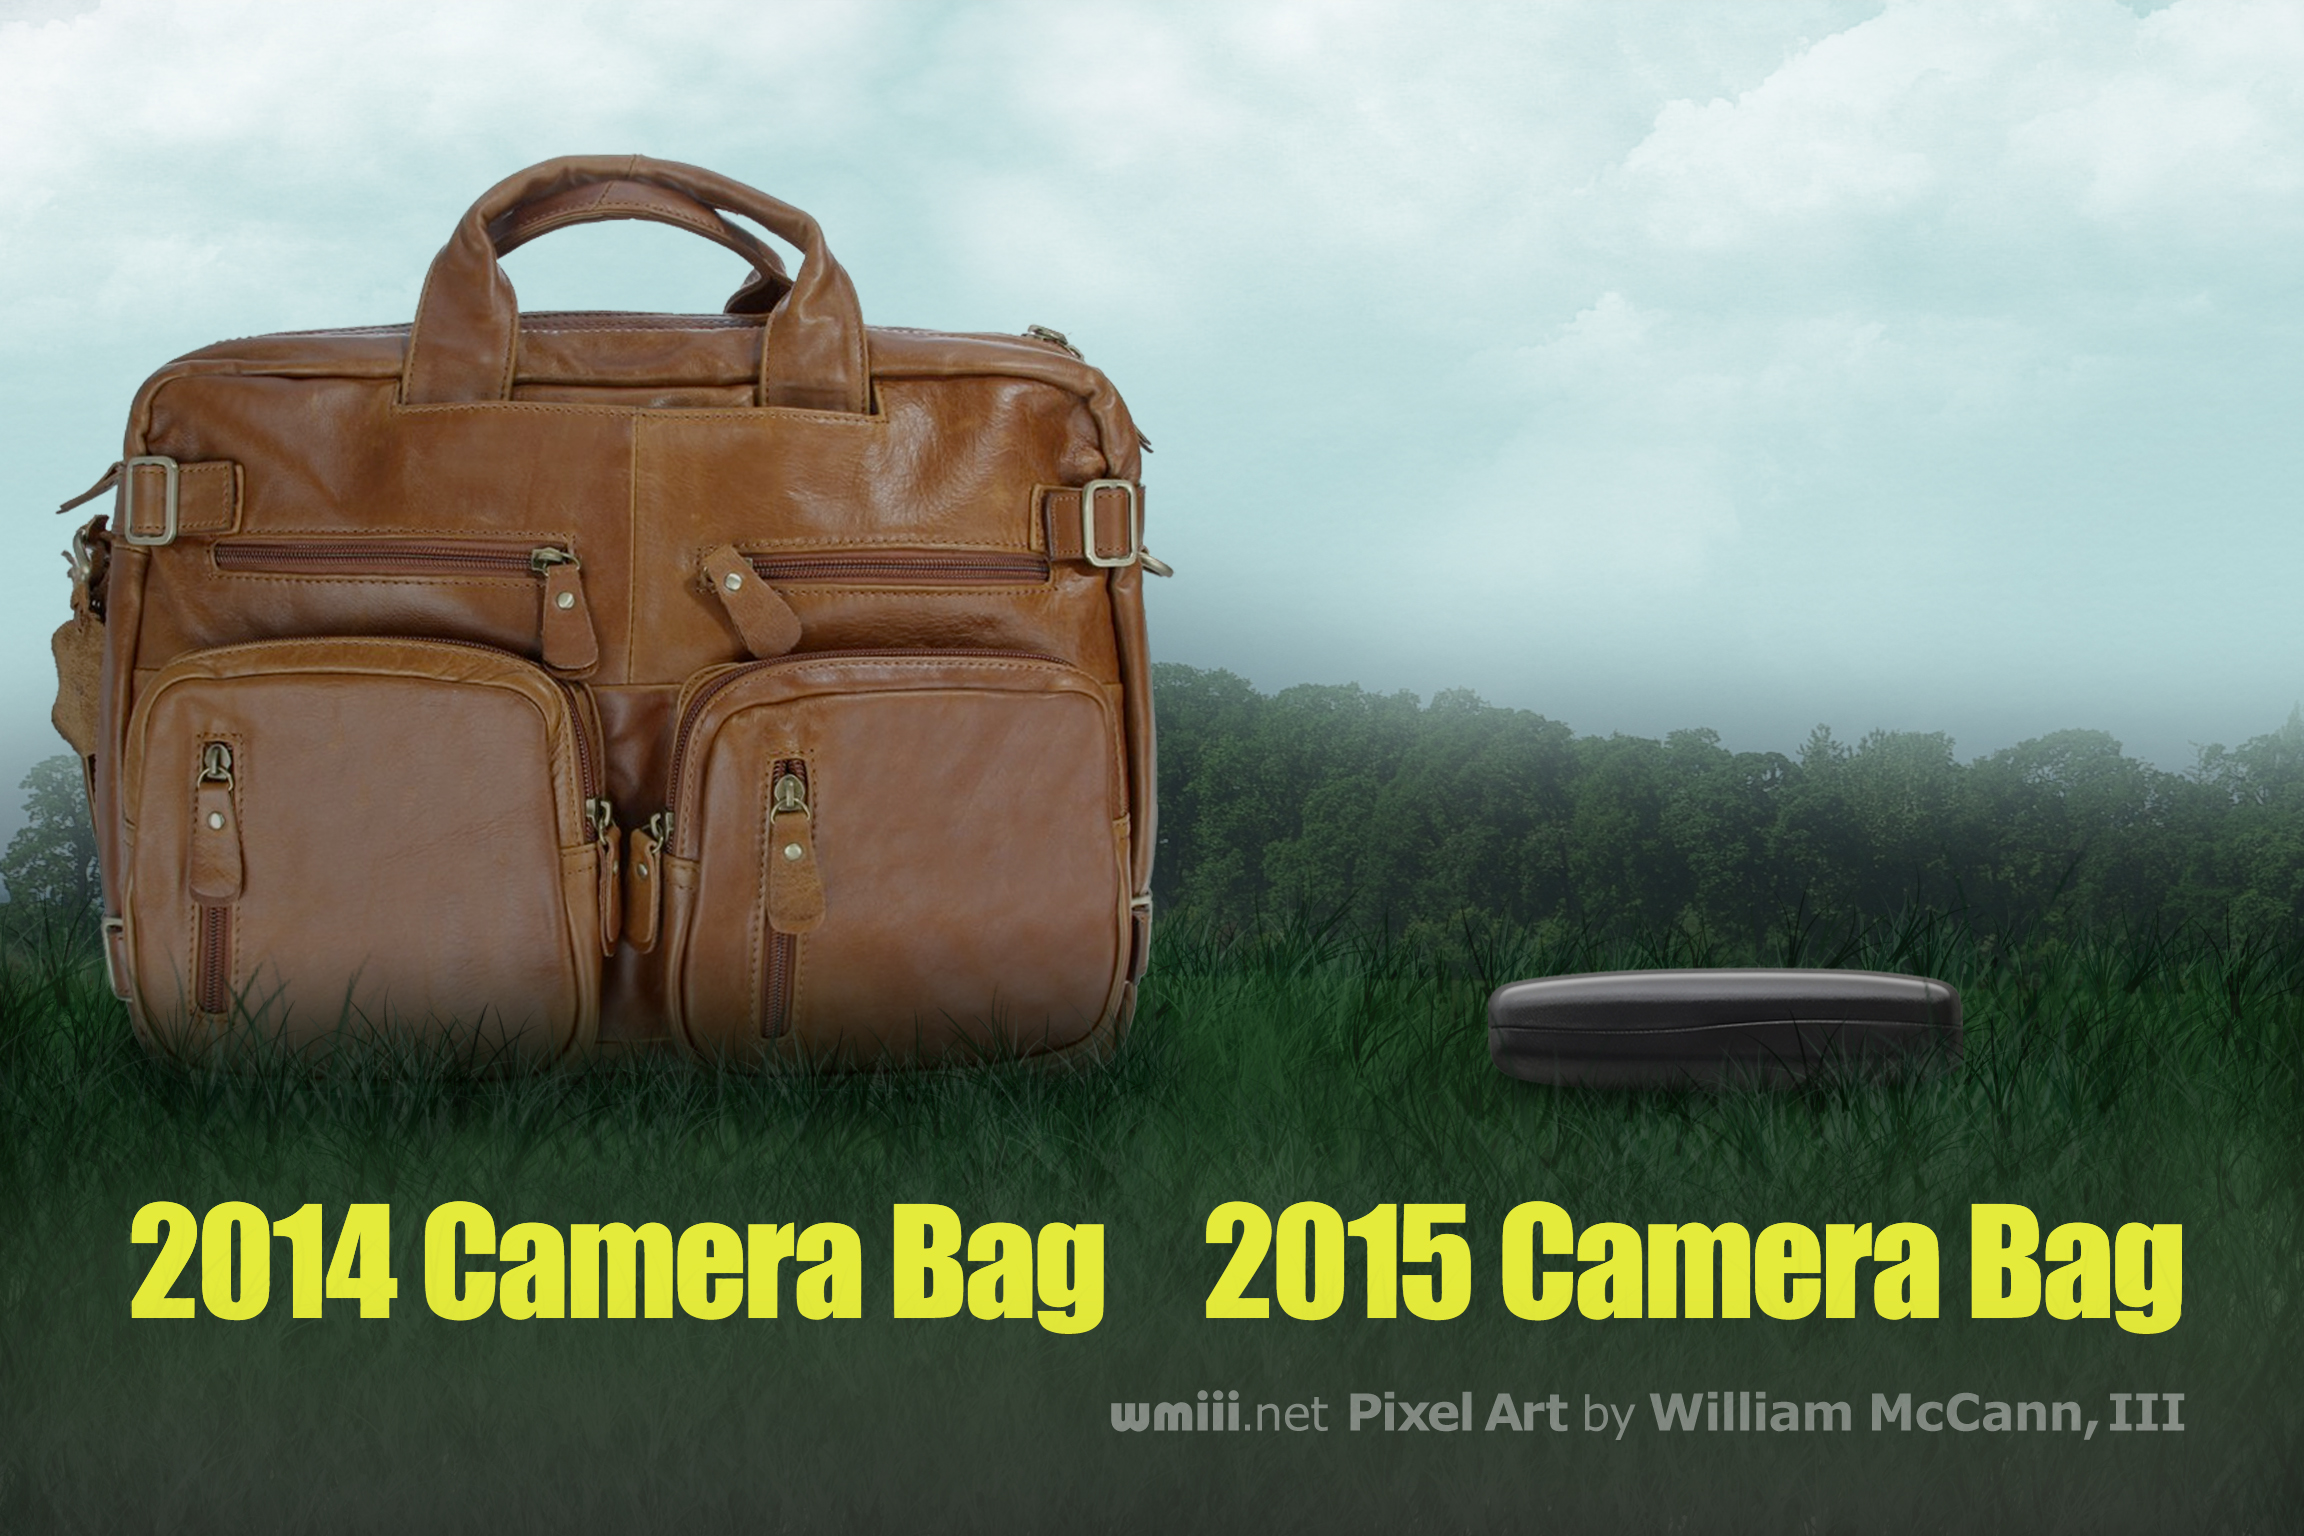 2014 - 2015 Camera Bags